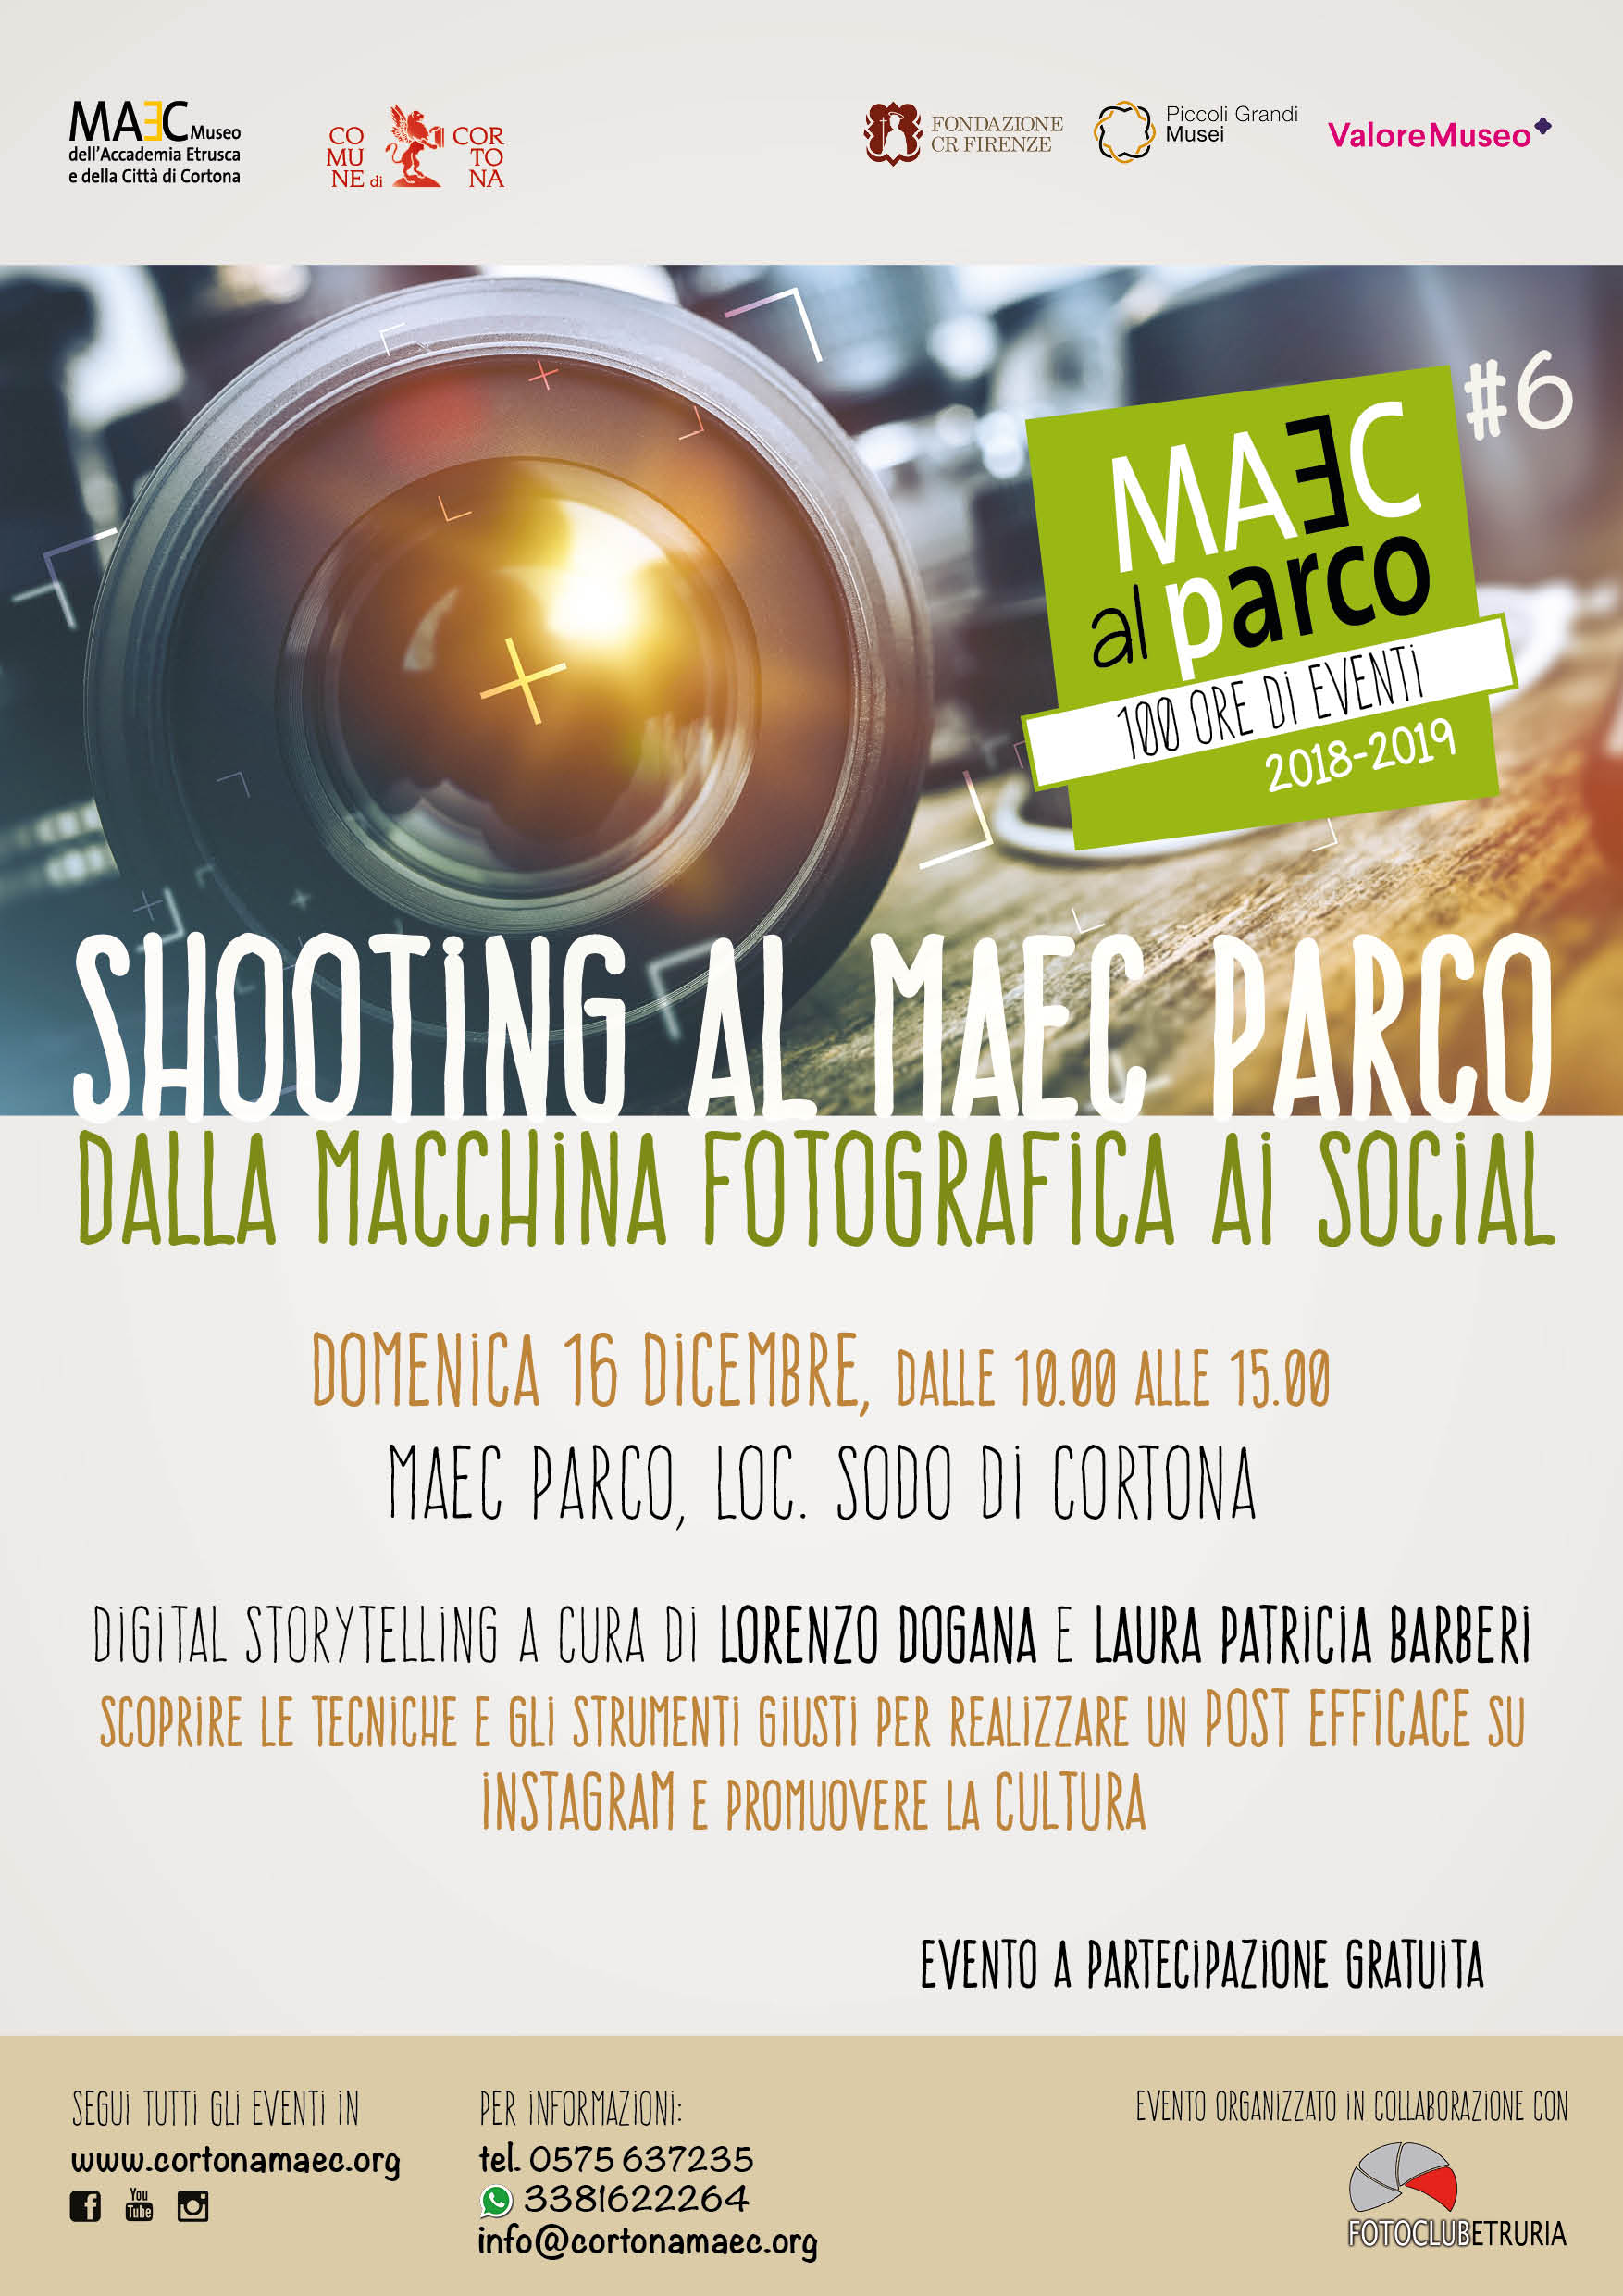 workshop sull'uso della macchina fotografica e uso social per promuovere la cultura